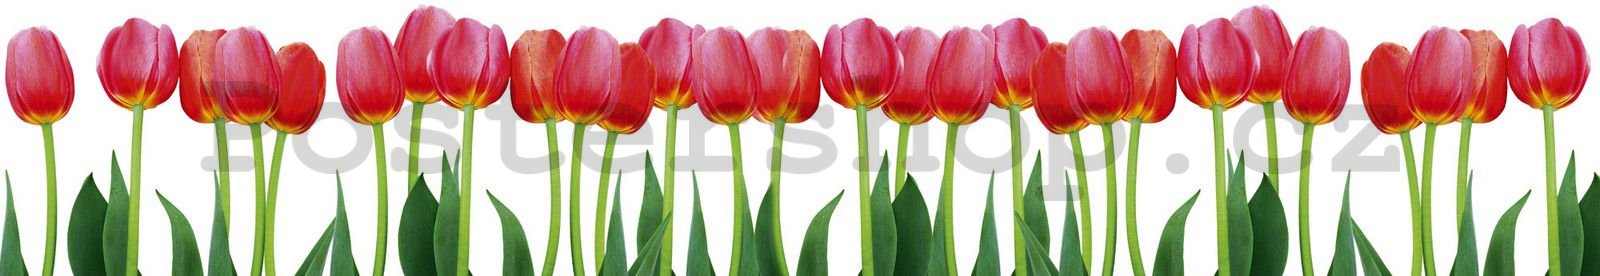 Samolepící omyvatelná tapeta za kuchyňskou linku - Červené tulipány, 350x60 cm